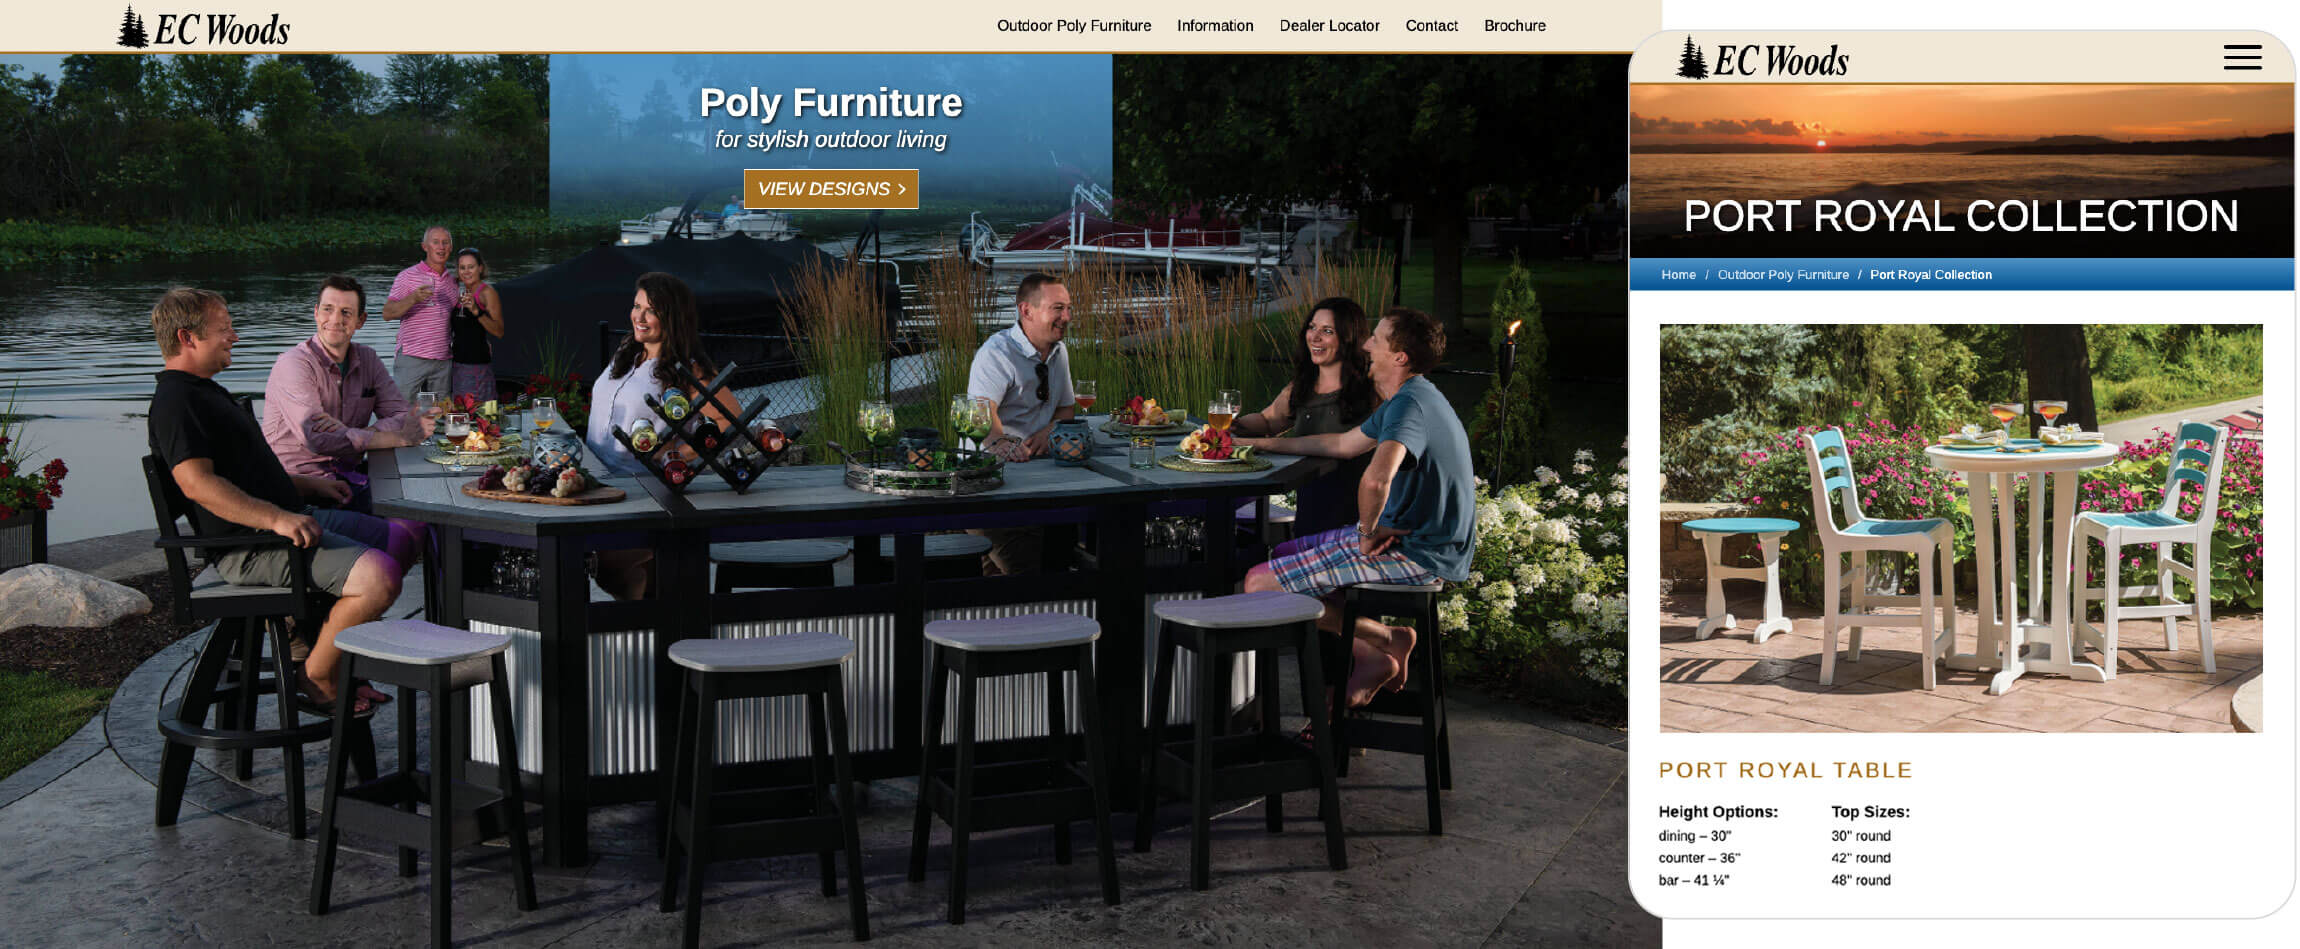 DGA Design Website Development EC Woods Outdoor Poly Furniture